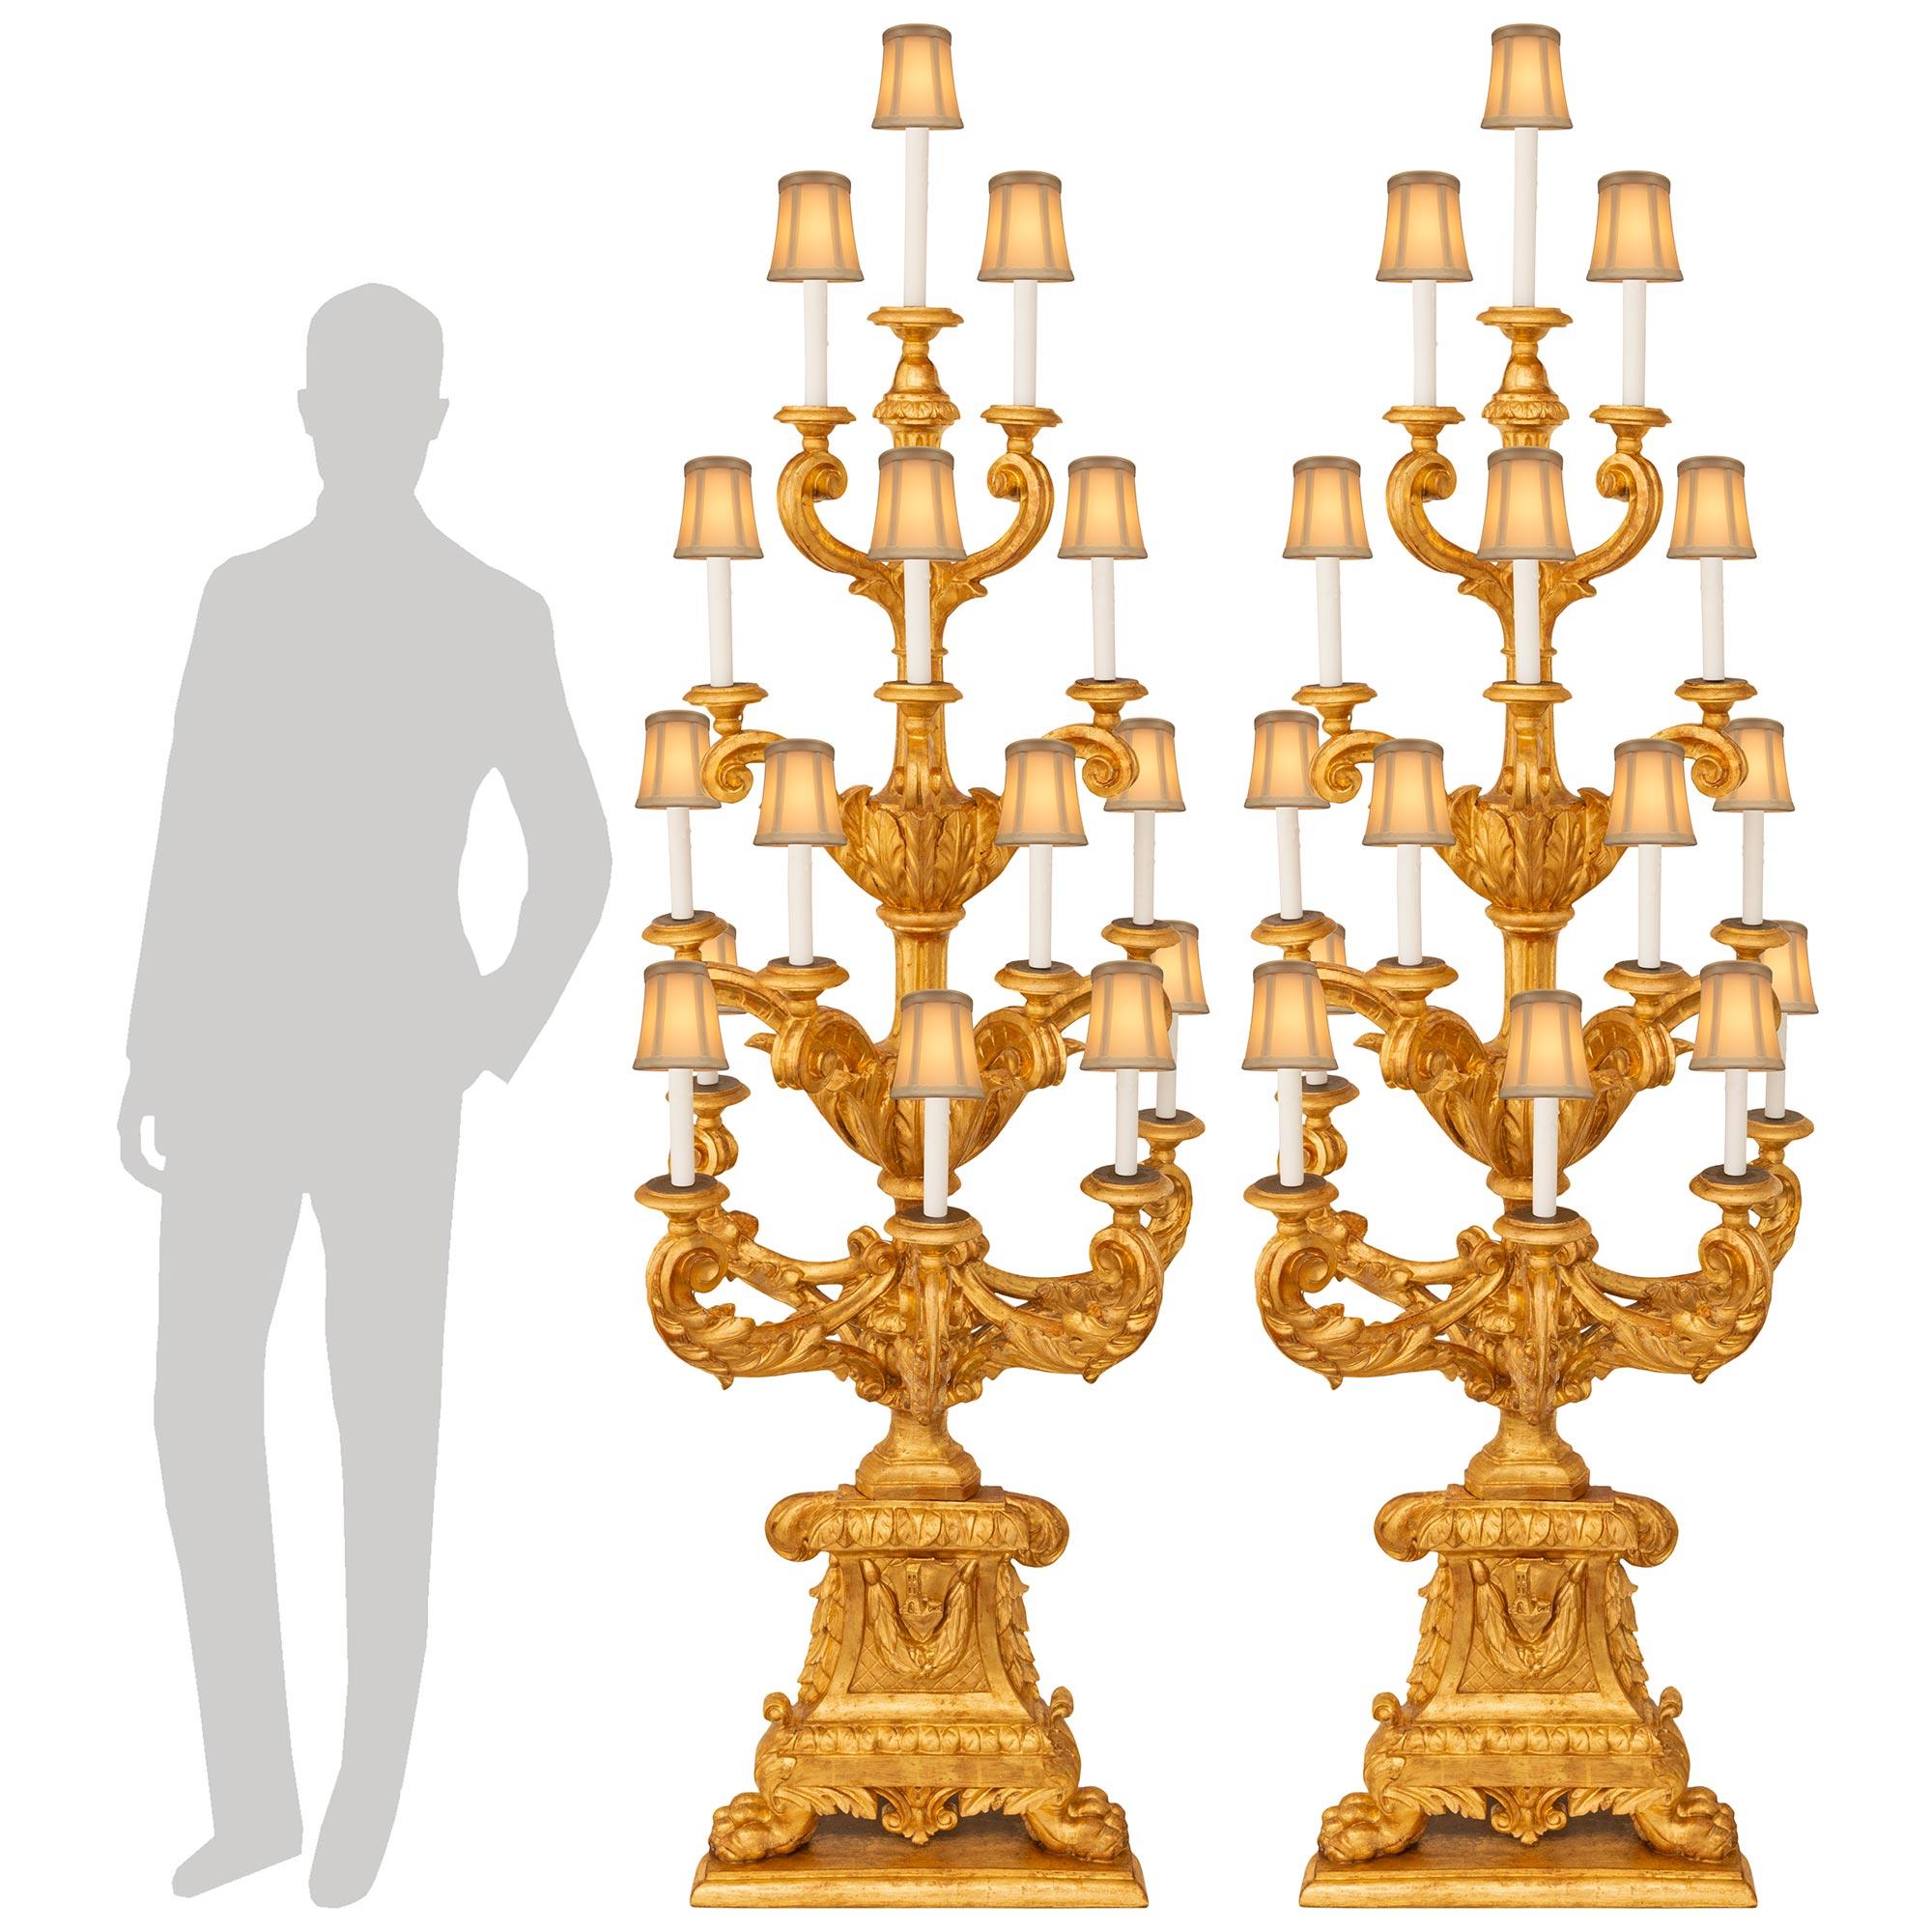 Paire impressionnante et de grande qualité de lampadaires Torchière en bois doré baroque italien du XVIIIe siècle. Chaque torchère autoportante à quinze lumières est surmontée d'une base carrée effilée avec de très beaux pieds en patte d'oie